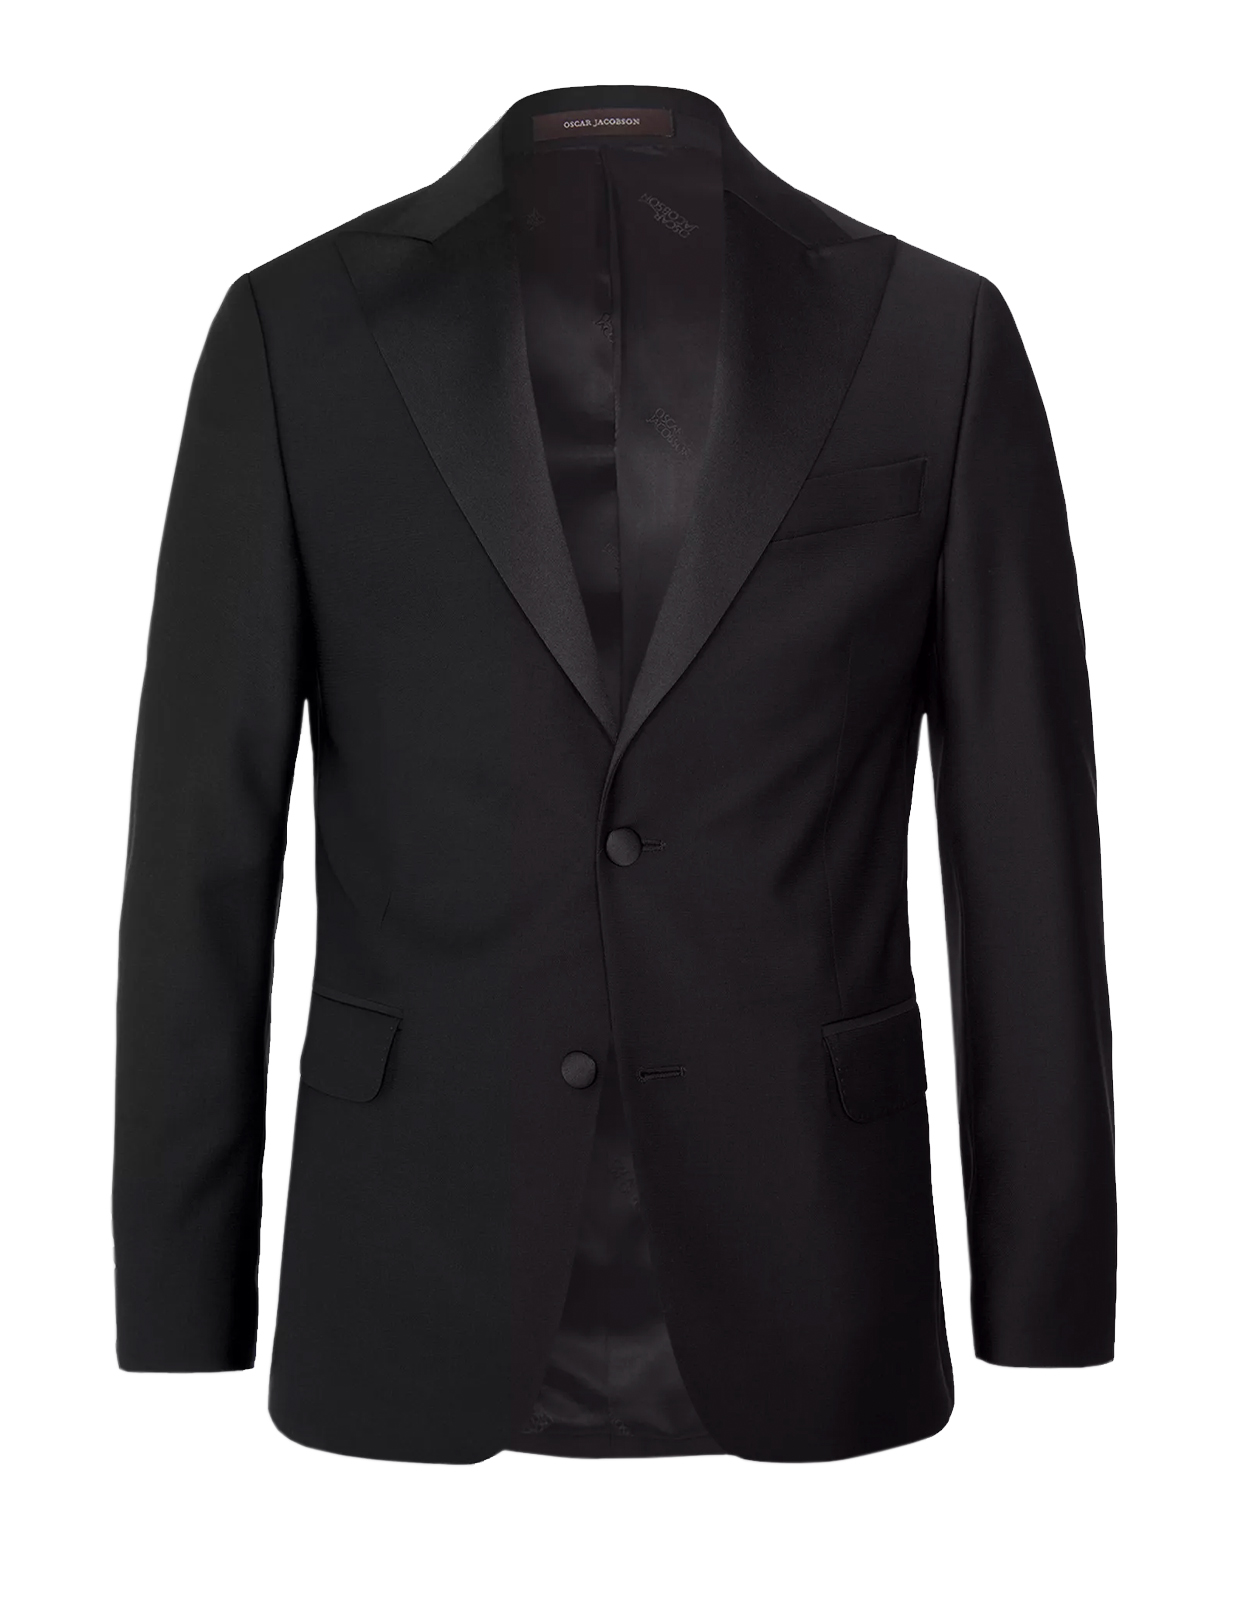 Elder Tuxedo Jacket Mix & Match Black Stl 148